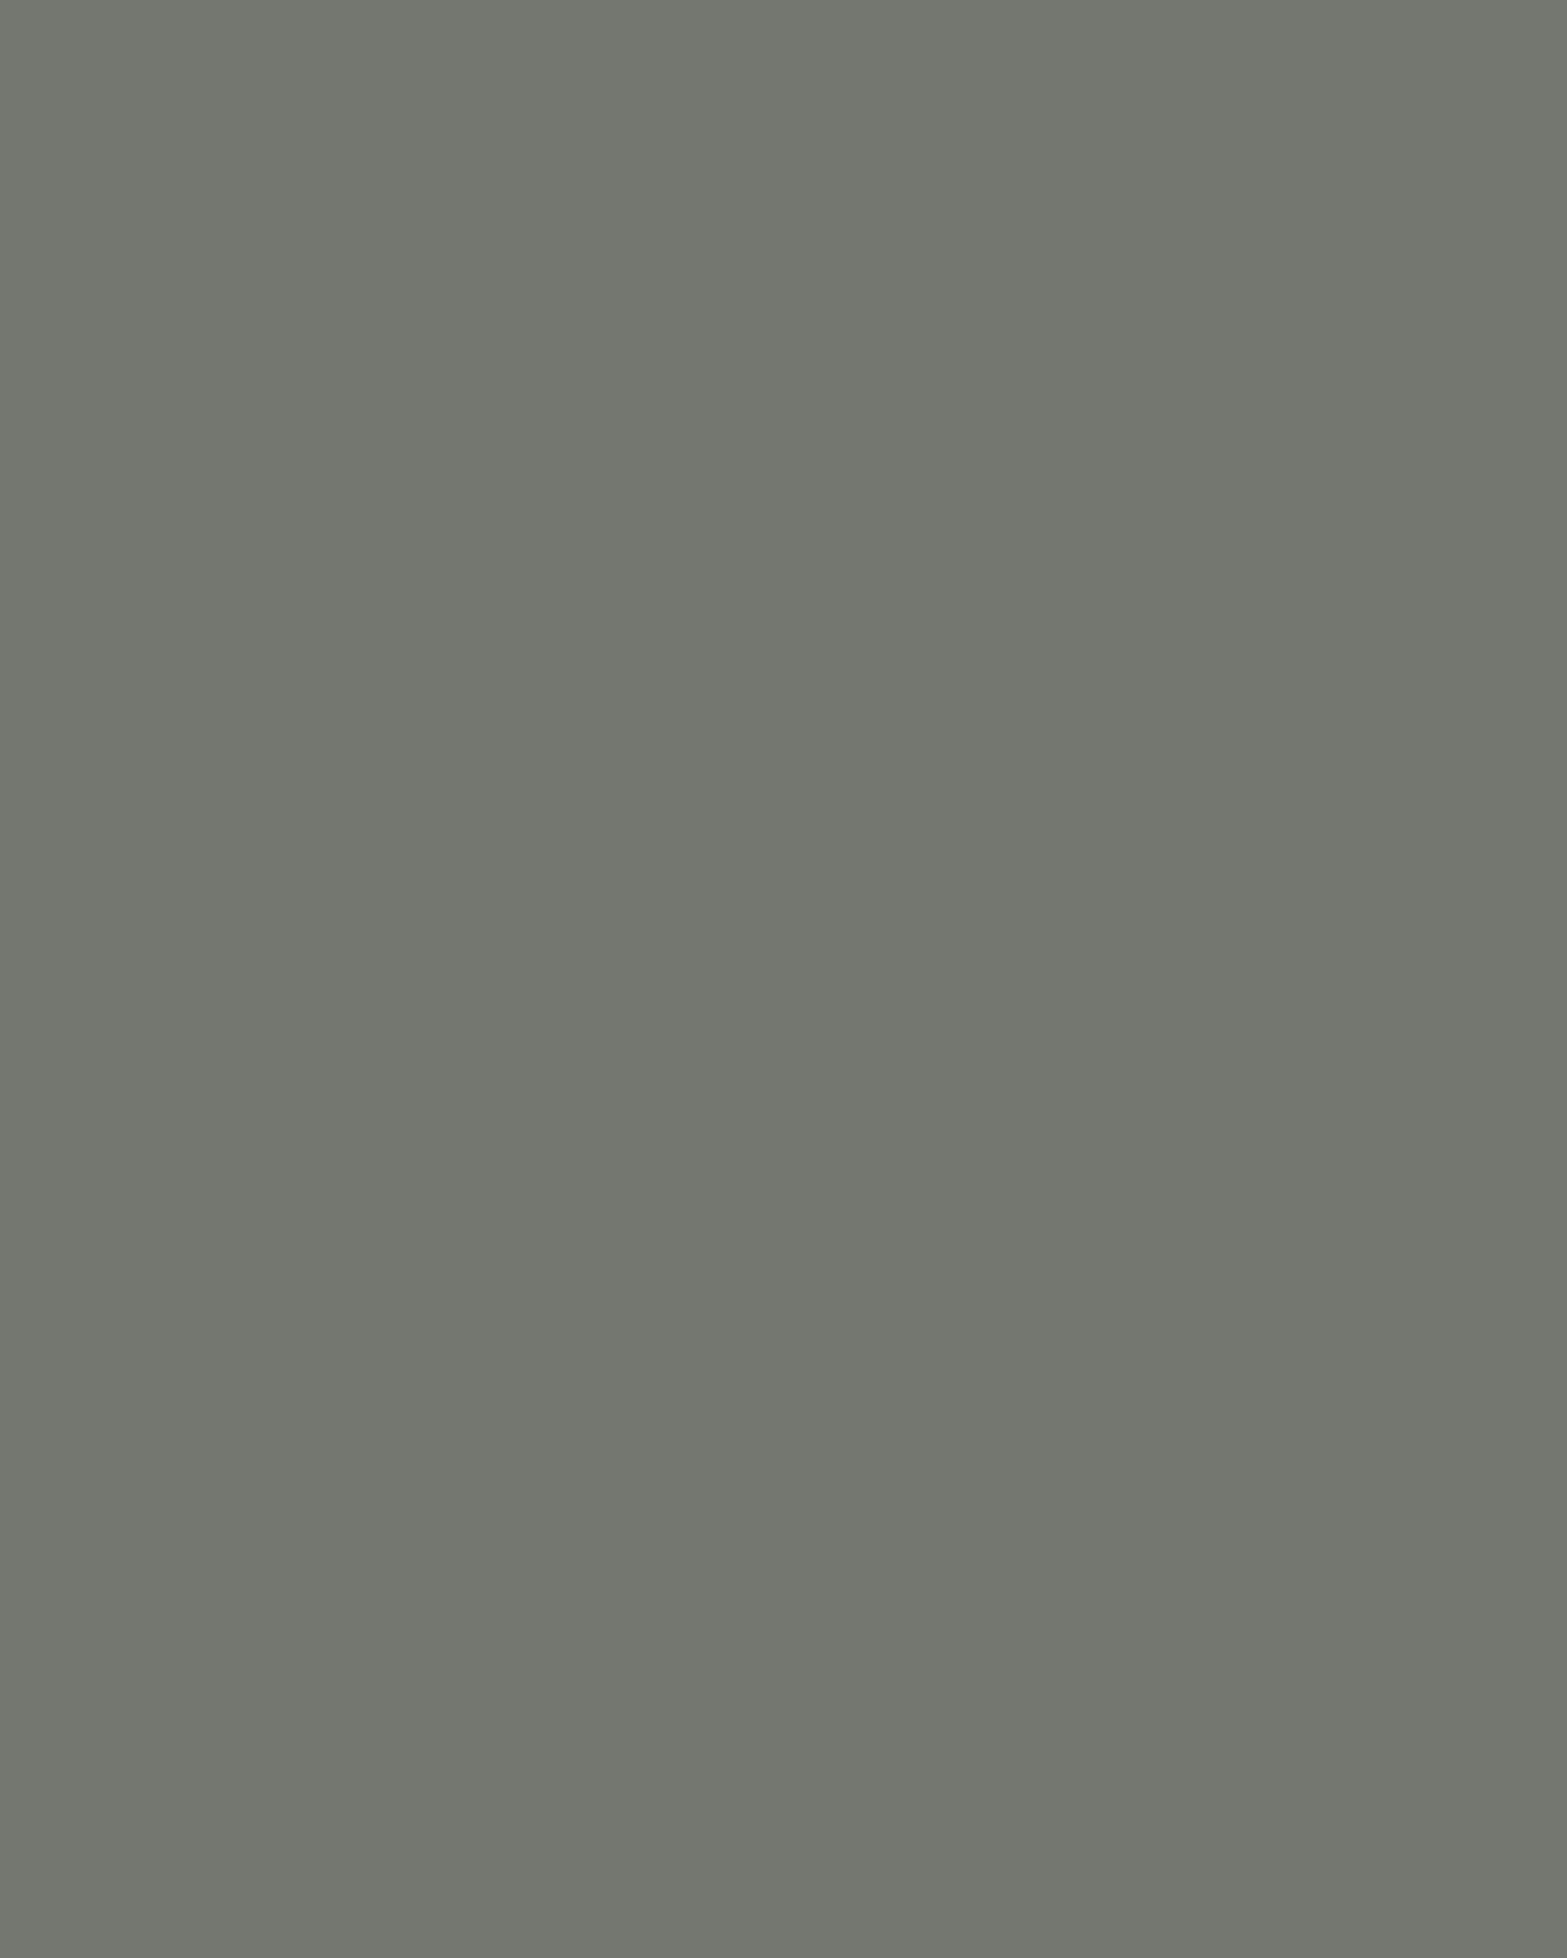 Архип Куинджи. Ладожское озеро. 1873. Государственный Русский музей, Санкт-Петербург